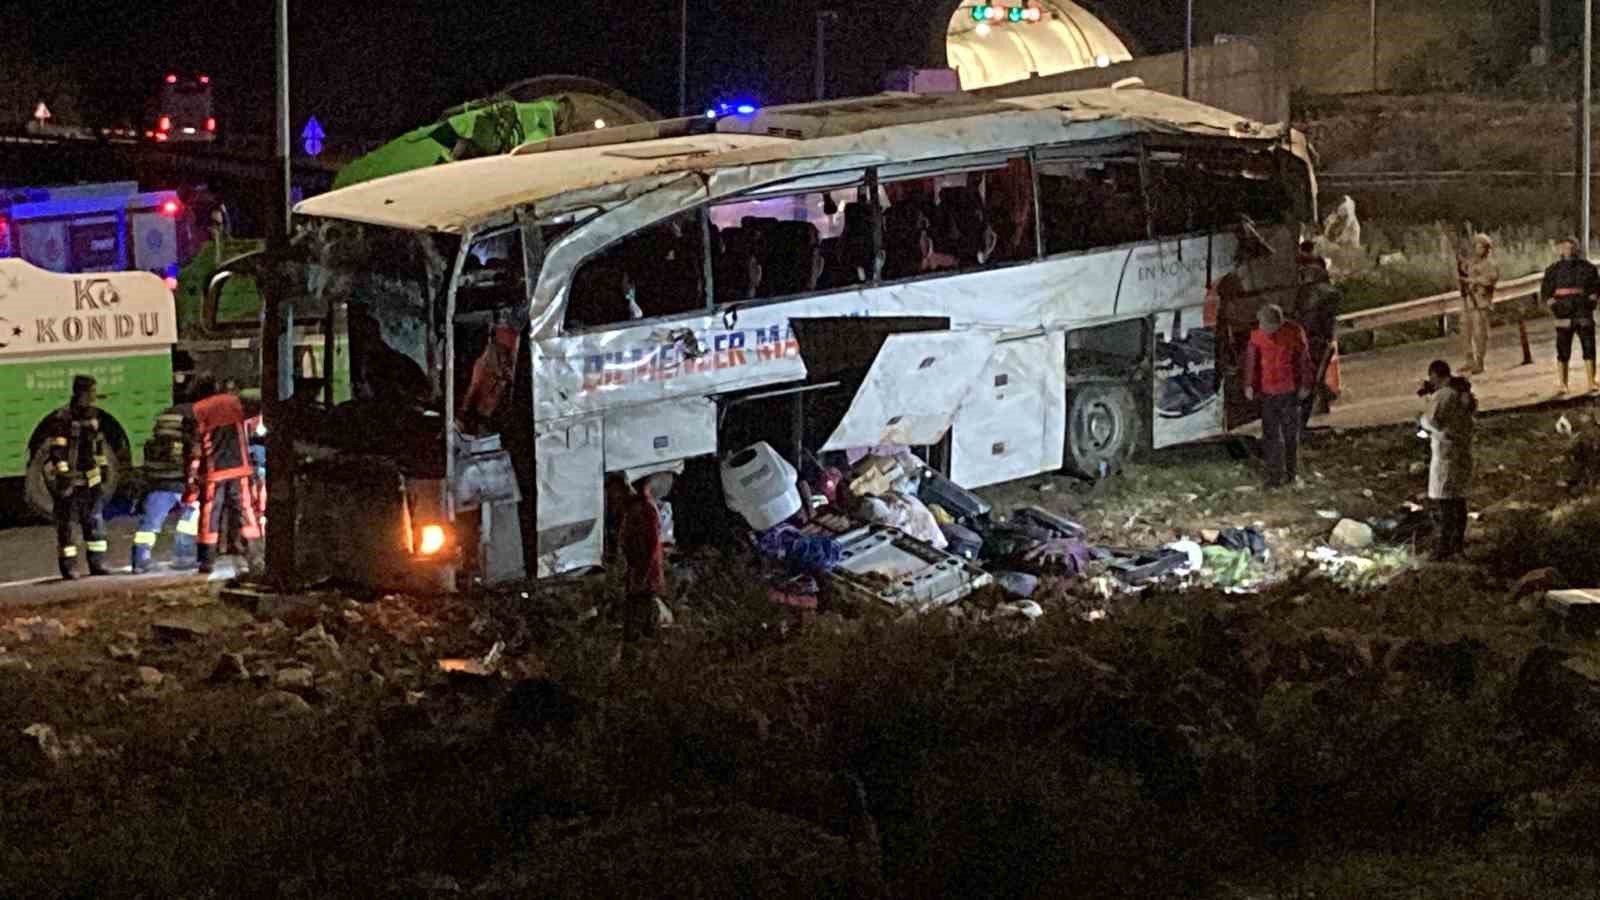 Mersin’de meydana gelen trafik kazasında 9 kişi hayatını kaybetti, 28 kişi yaralandı